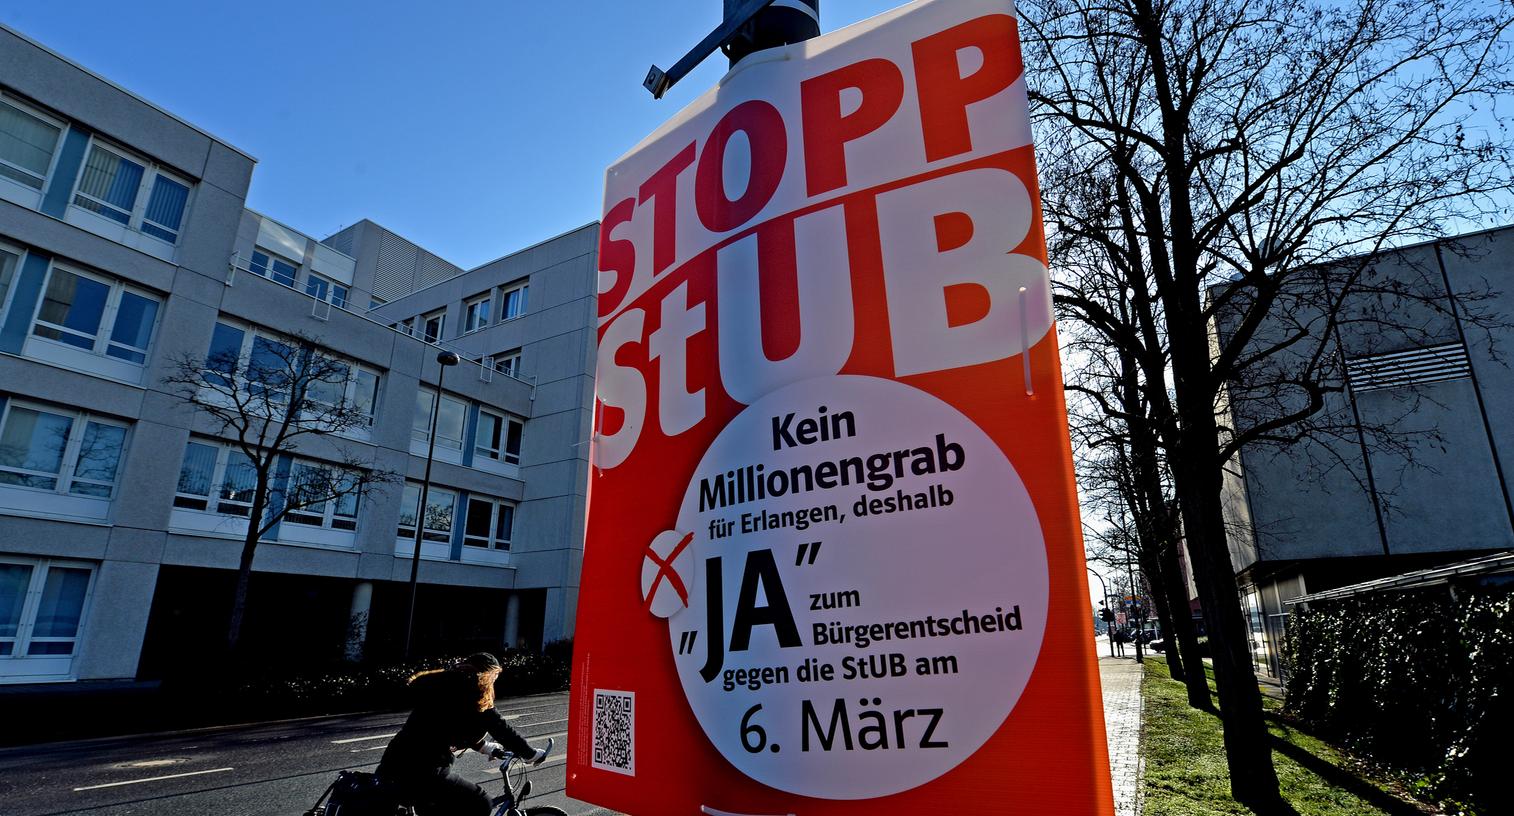 Das Projekt StUB sorgt in Erlangen derzeit für Diskussionen - am 6. März kommt es zum Bürgerentscheid.